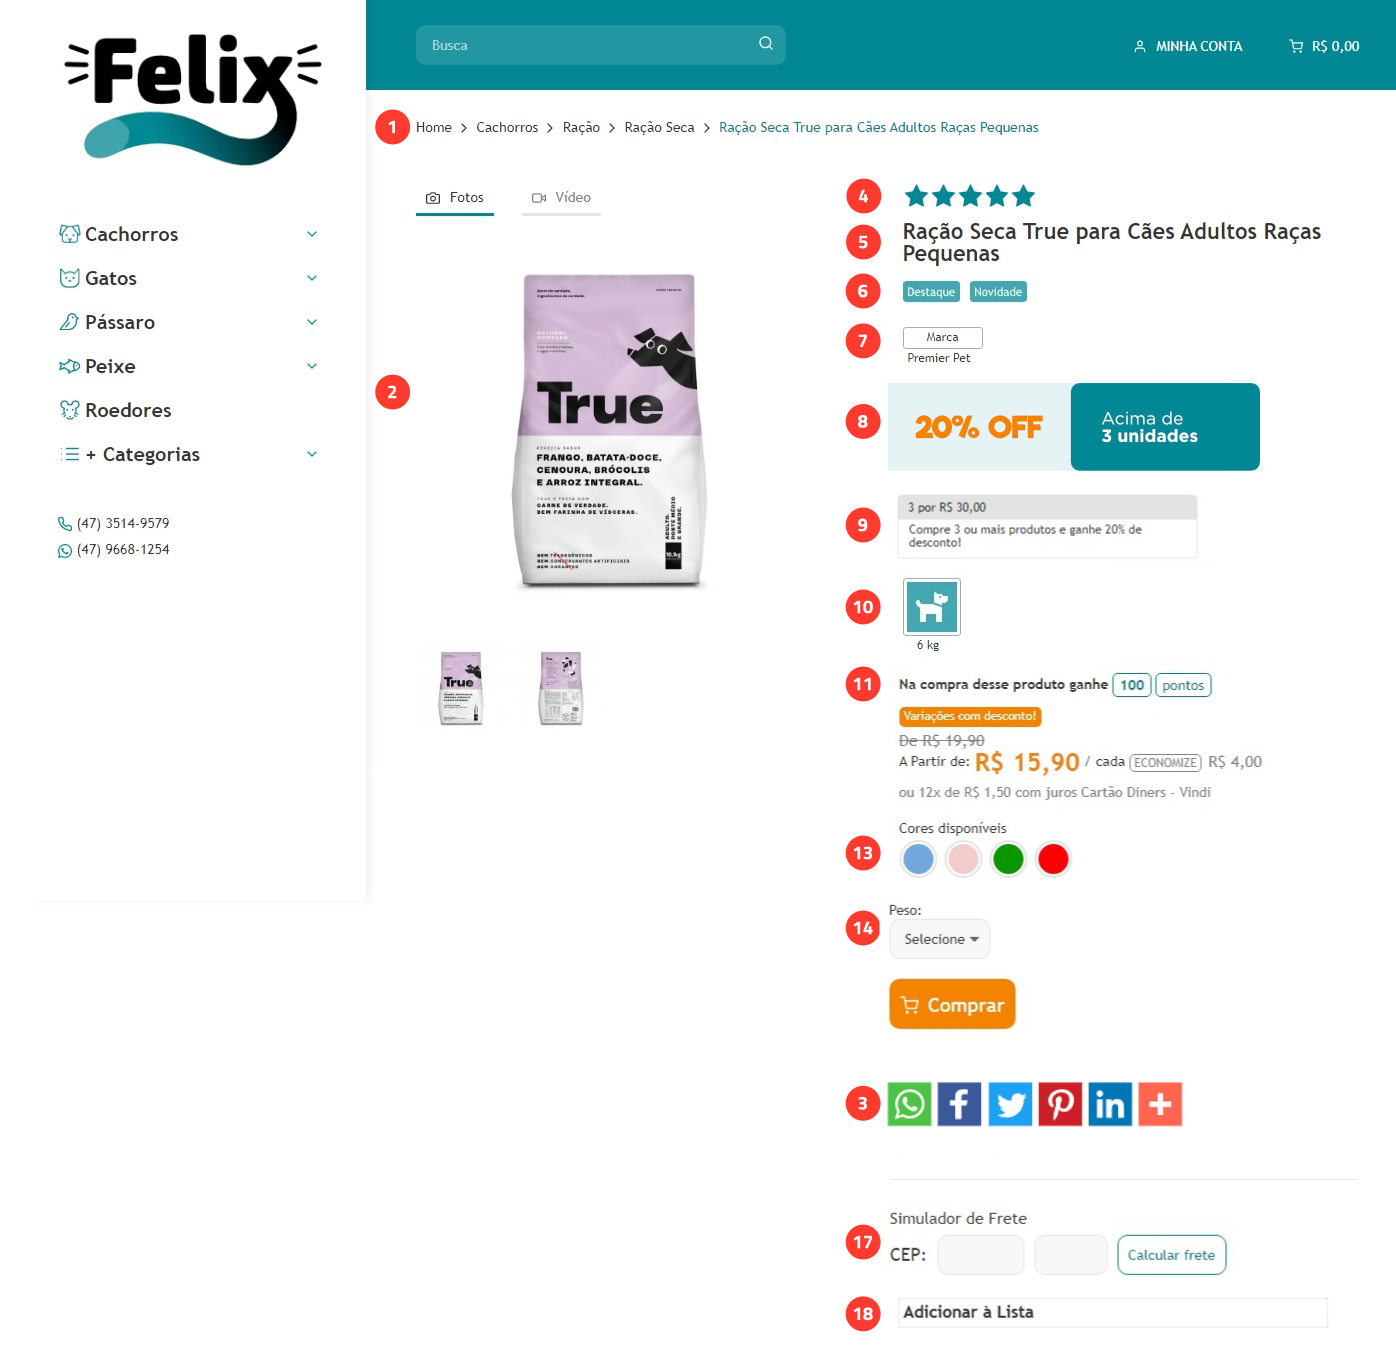 Imagem numerada exibindo as estruturas da página de produto, do tema Felix.